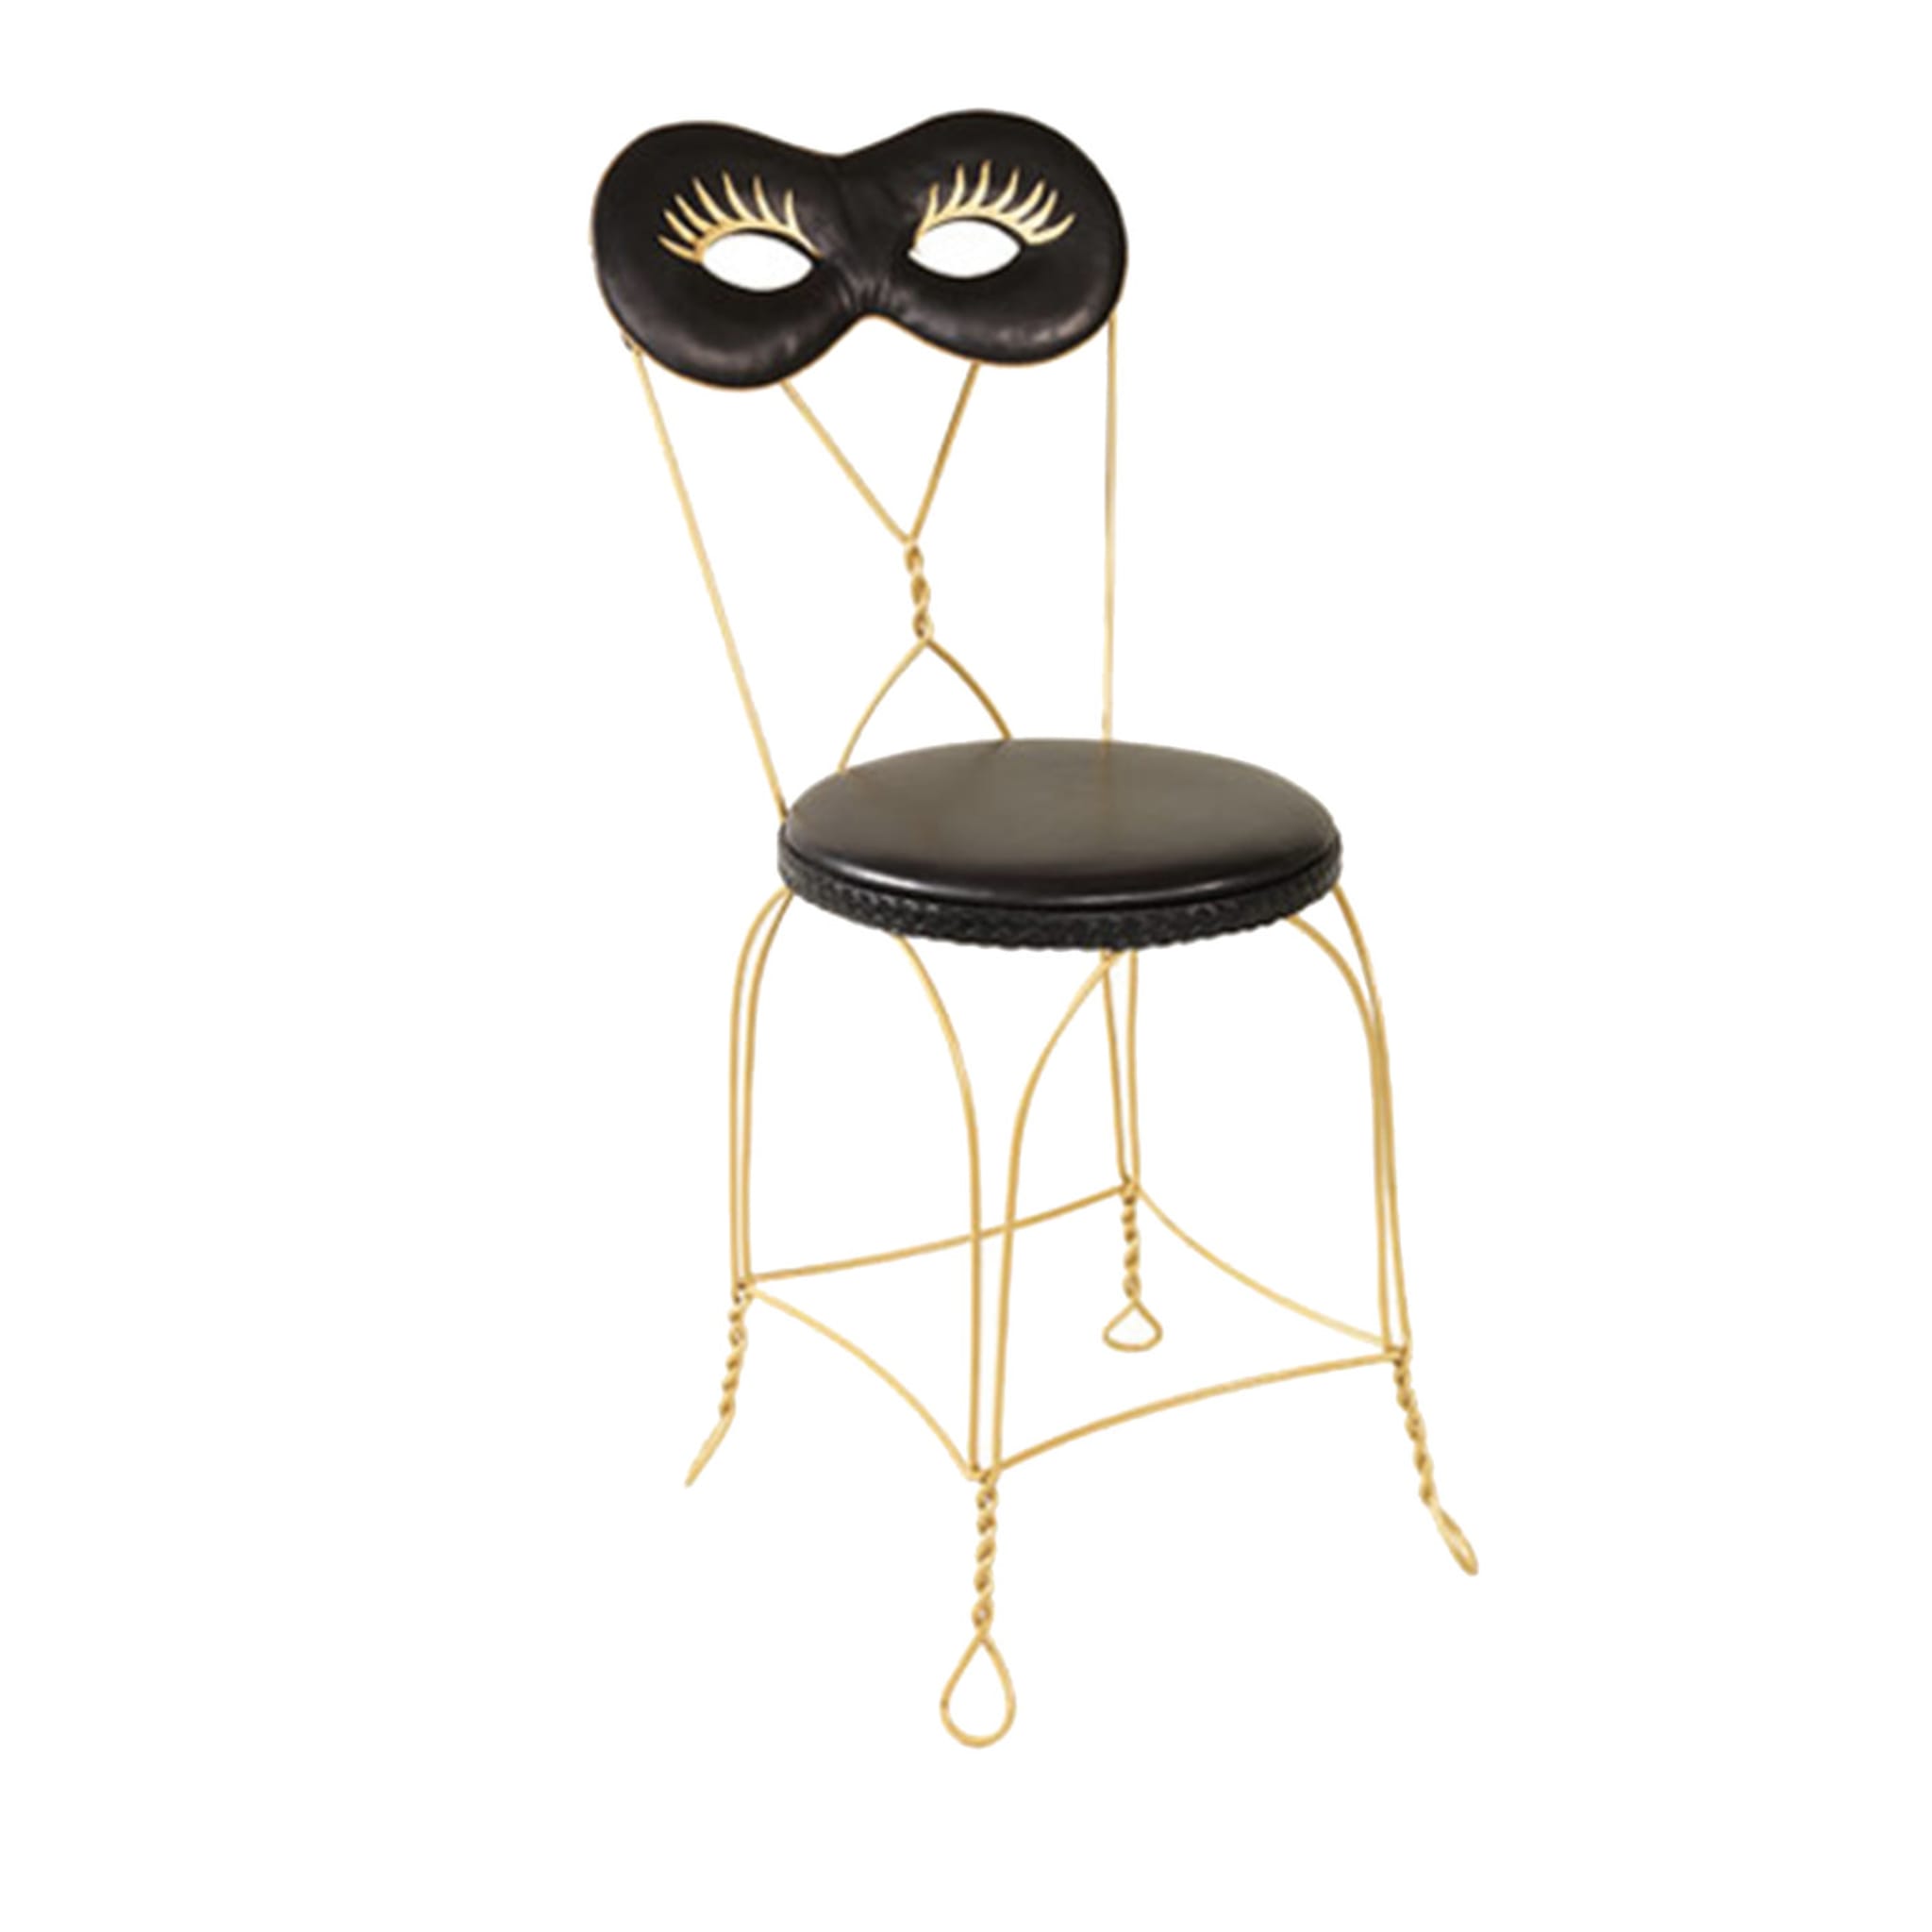 Maschera Chair by Moschino - Main view